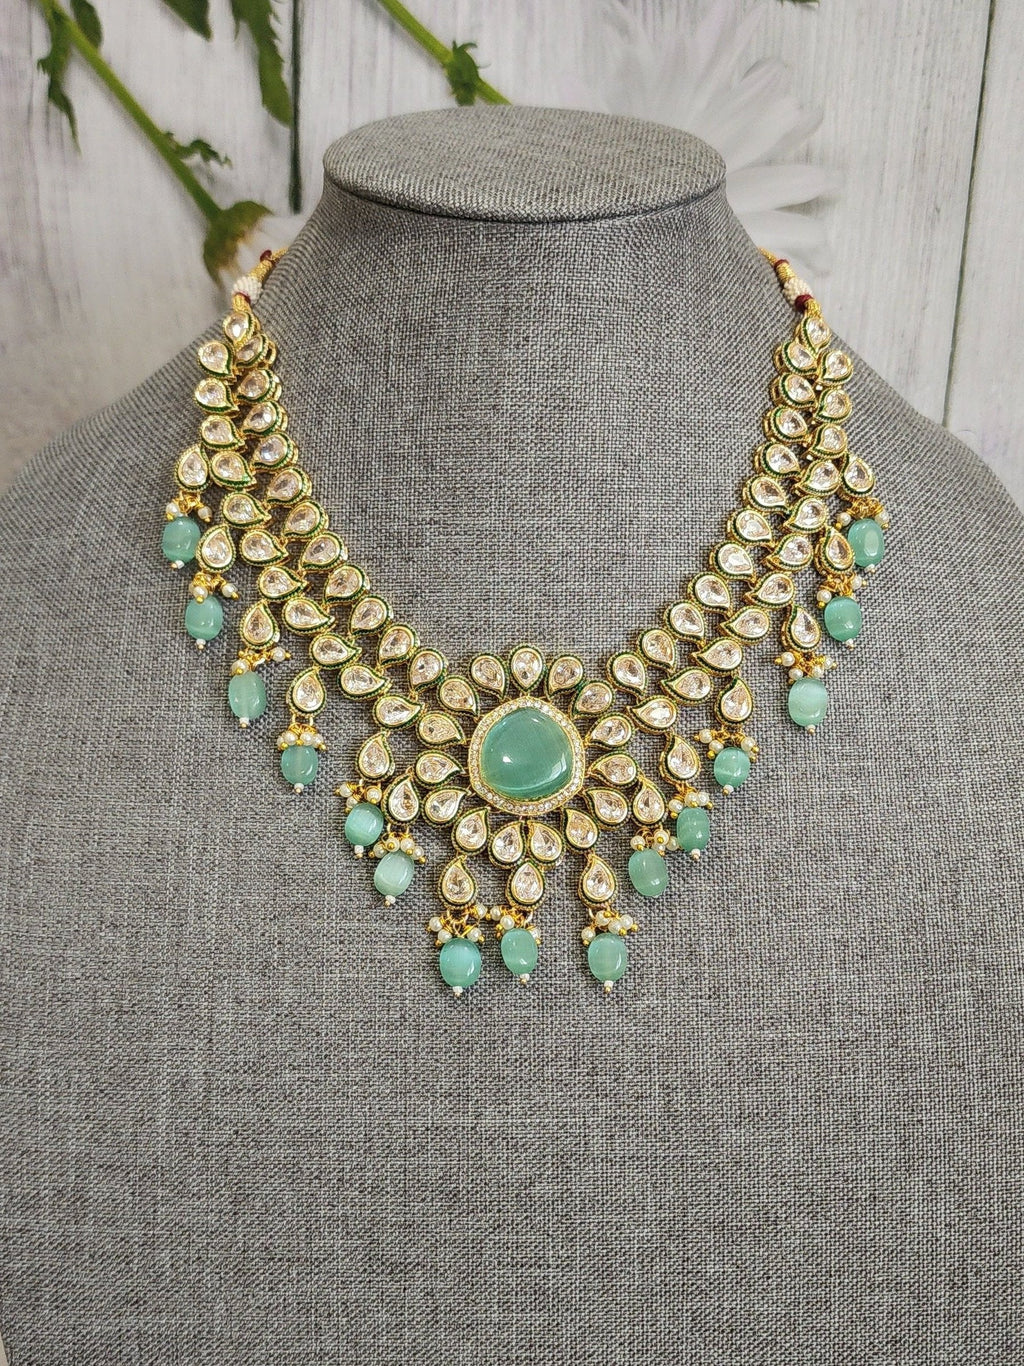 Ridhi kundan necklace set